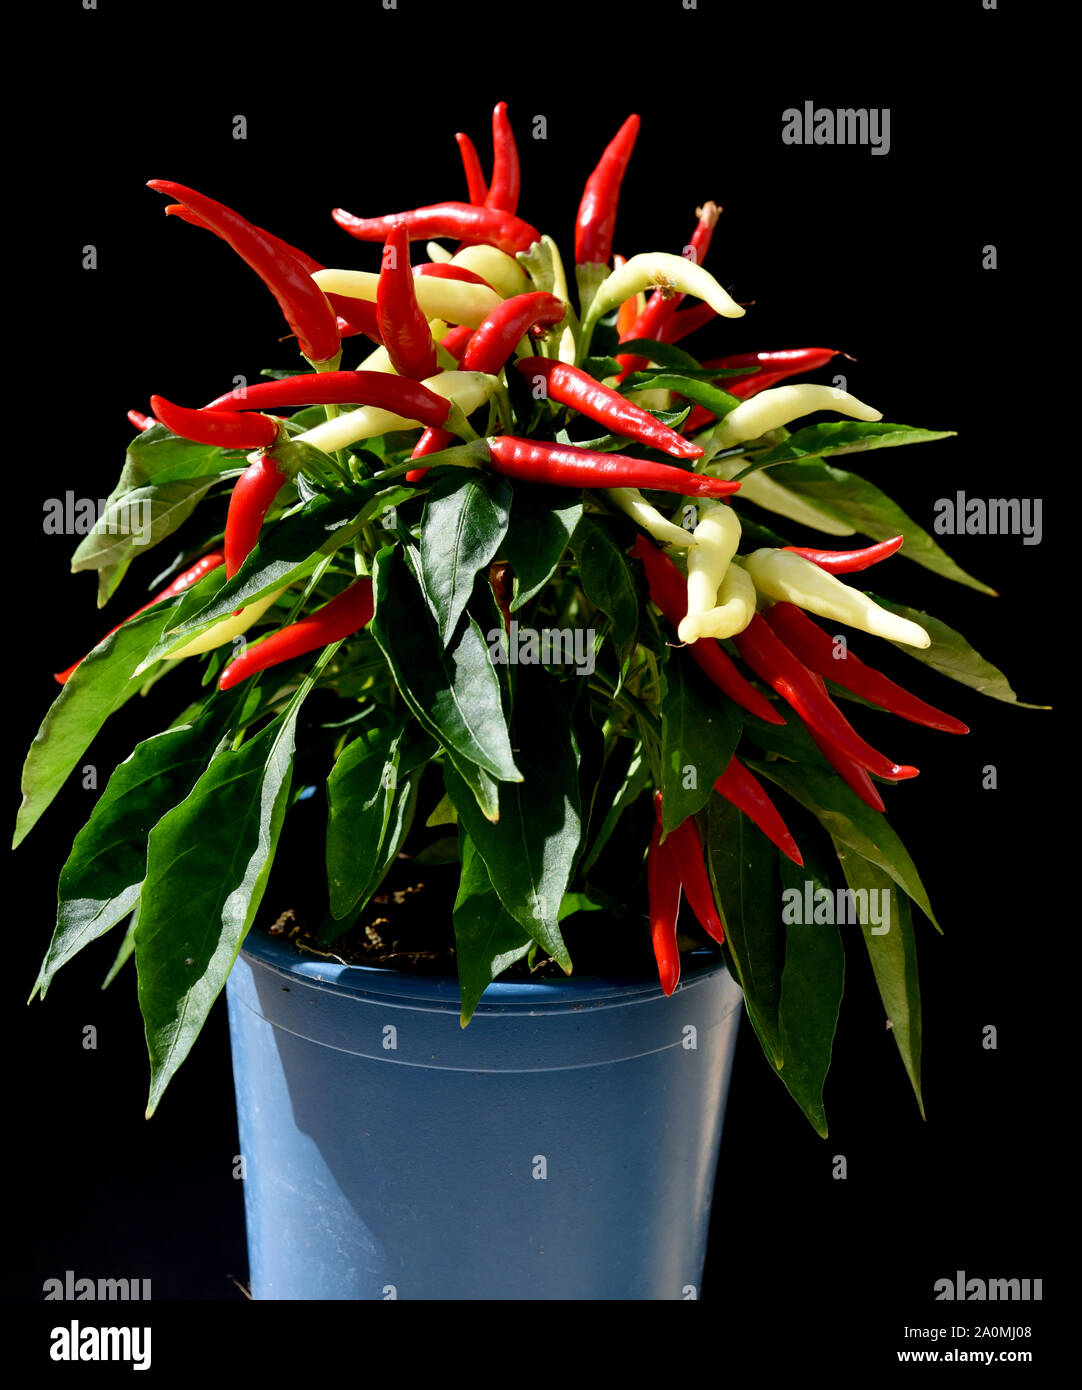 Topfchili, Zierpaprika, Capsicum Medusa, ist eine Gewuerz- und Zierpflanze mit roten und gelben Schoten sterben sehr scharf sind. Topf Chili, ornamentalen Pa Stockfoto